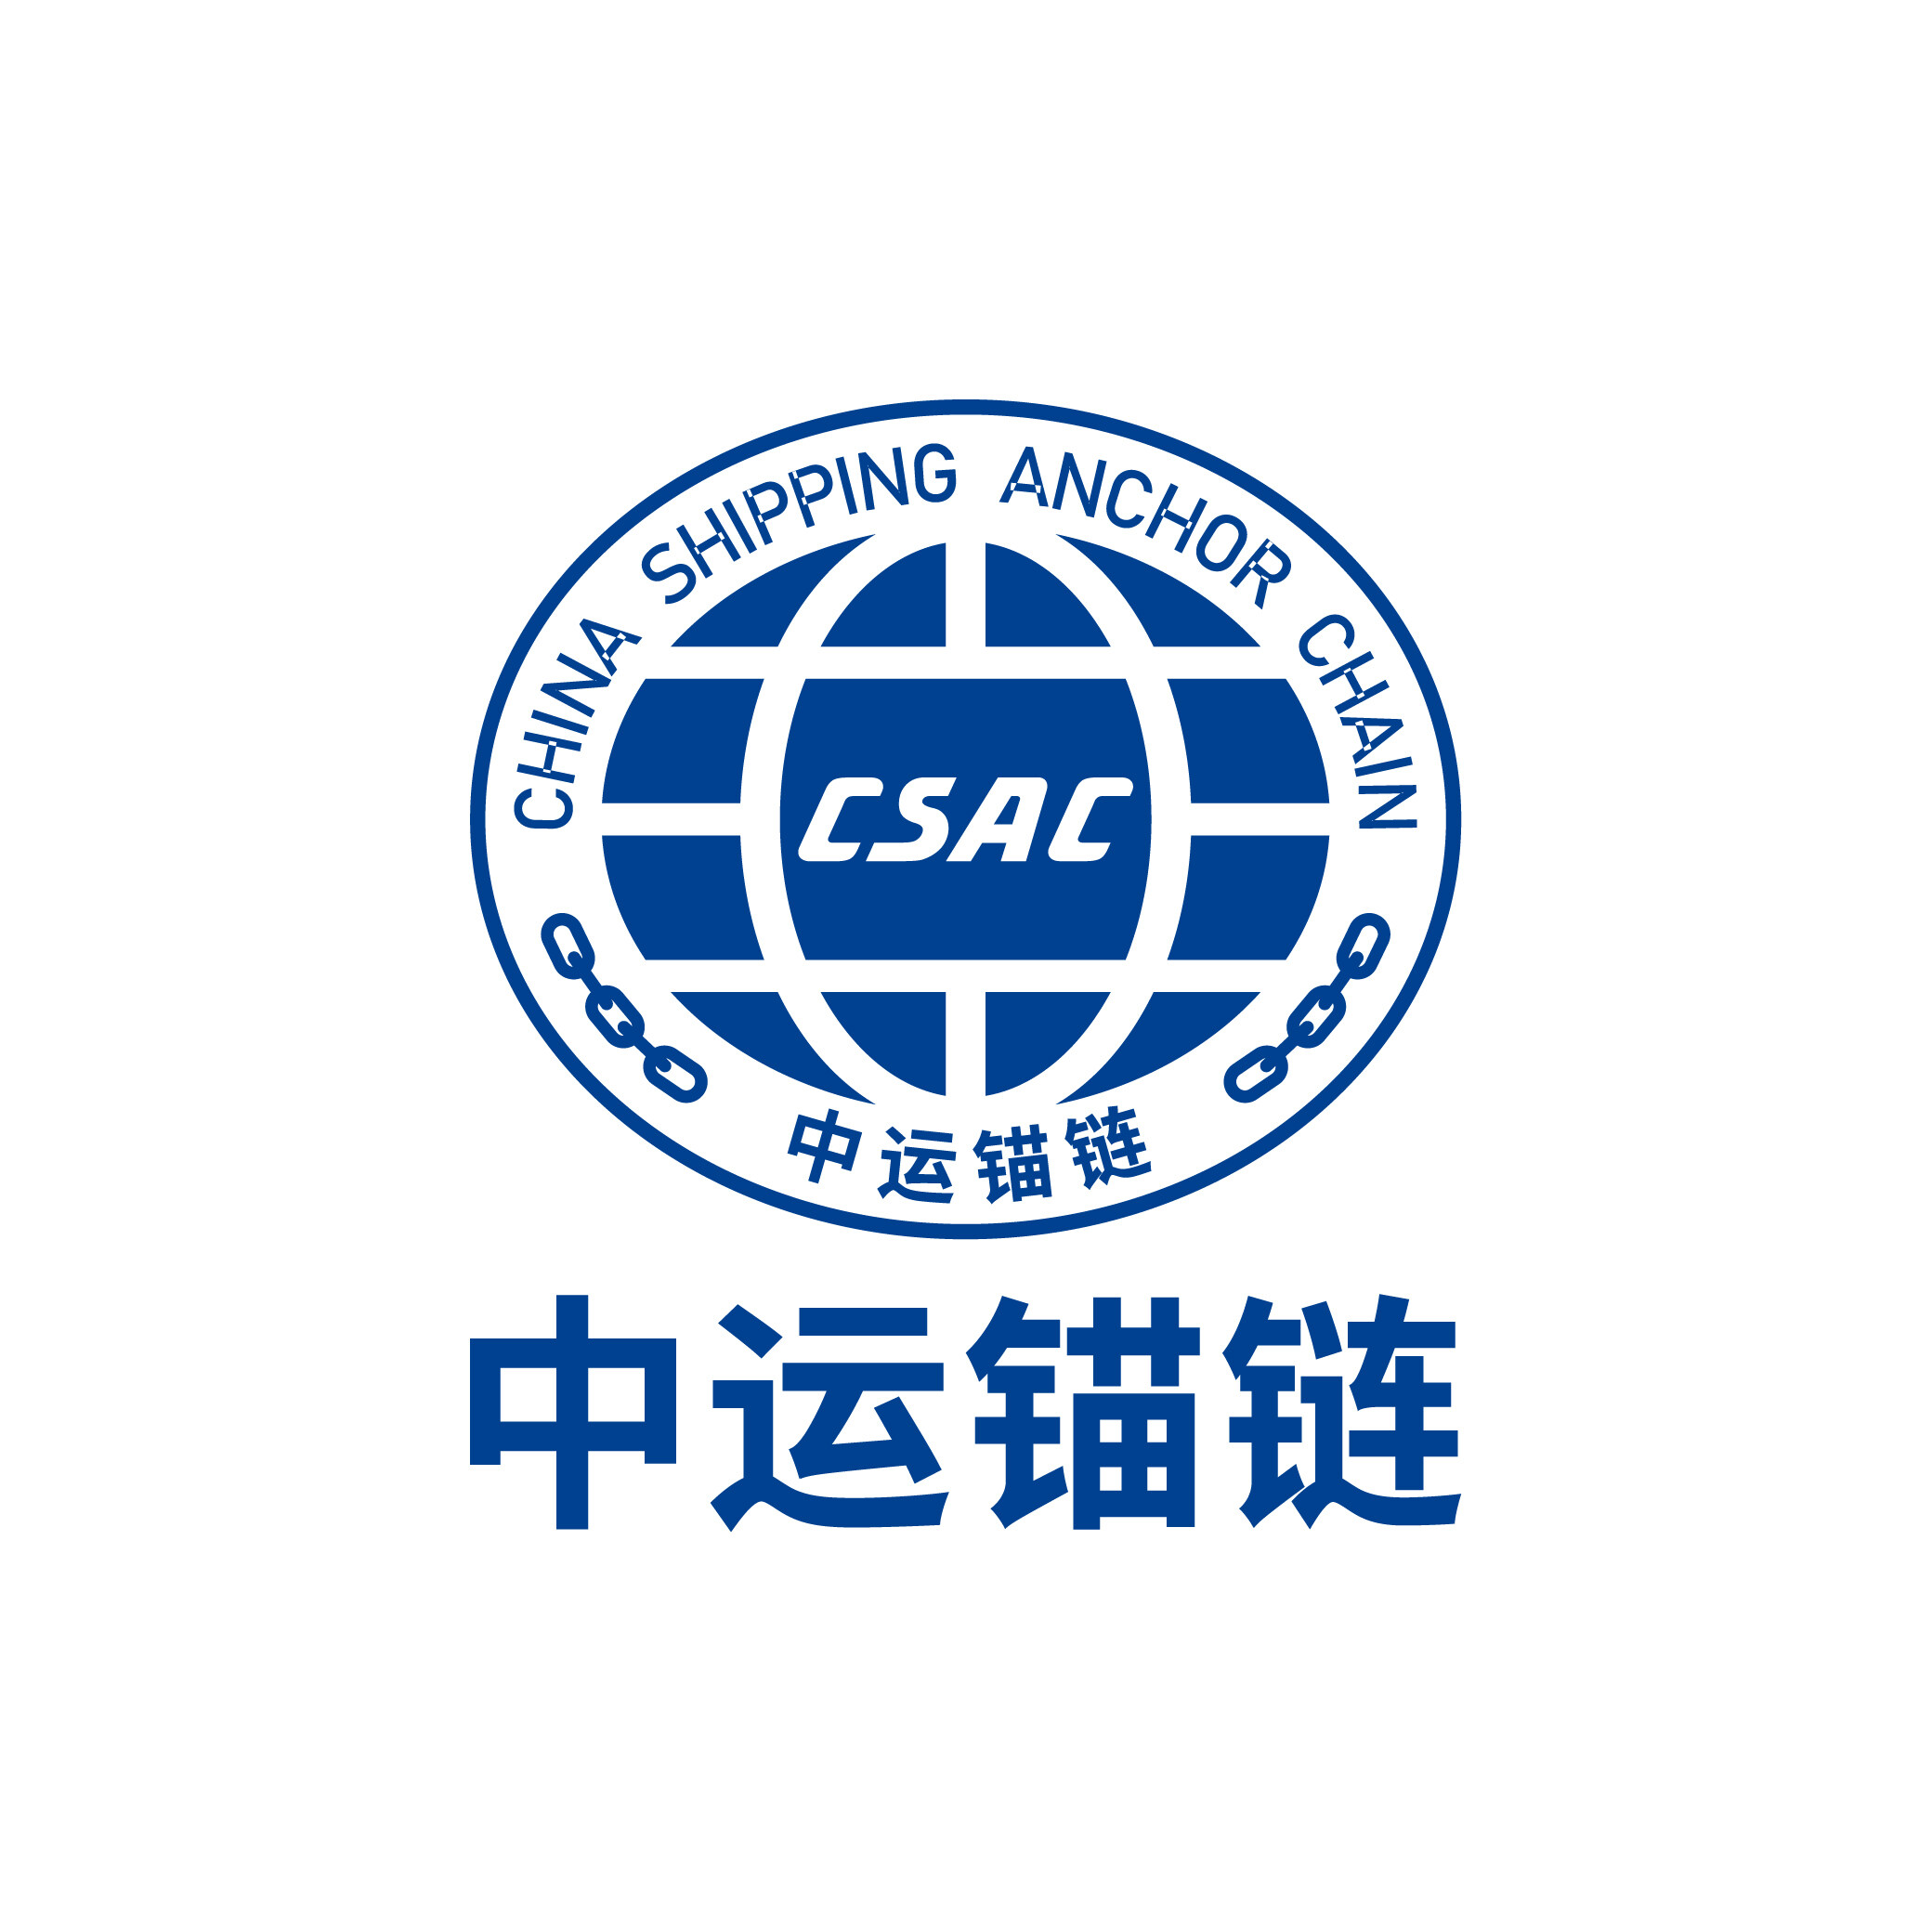 China Shipping Anchor Chain Jiangsu Co., Ltd